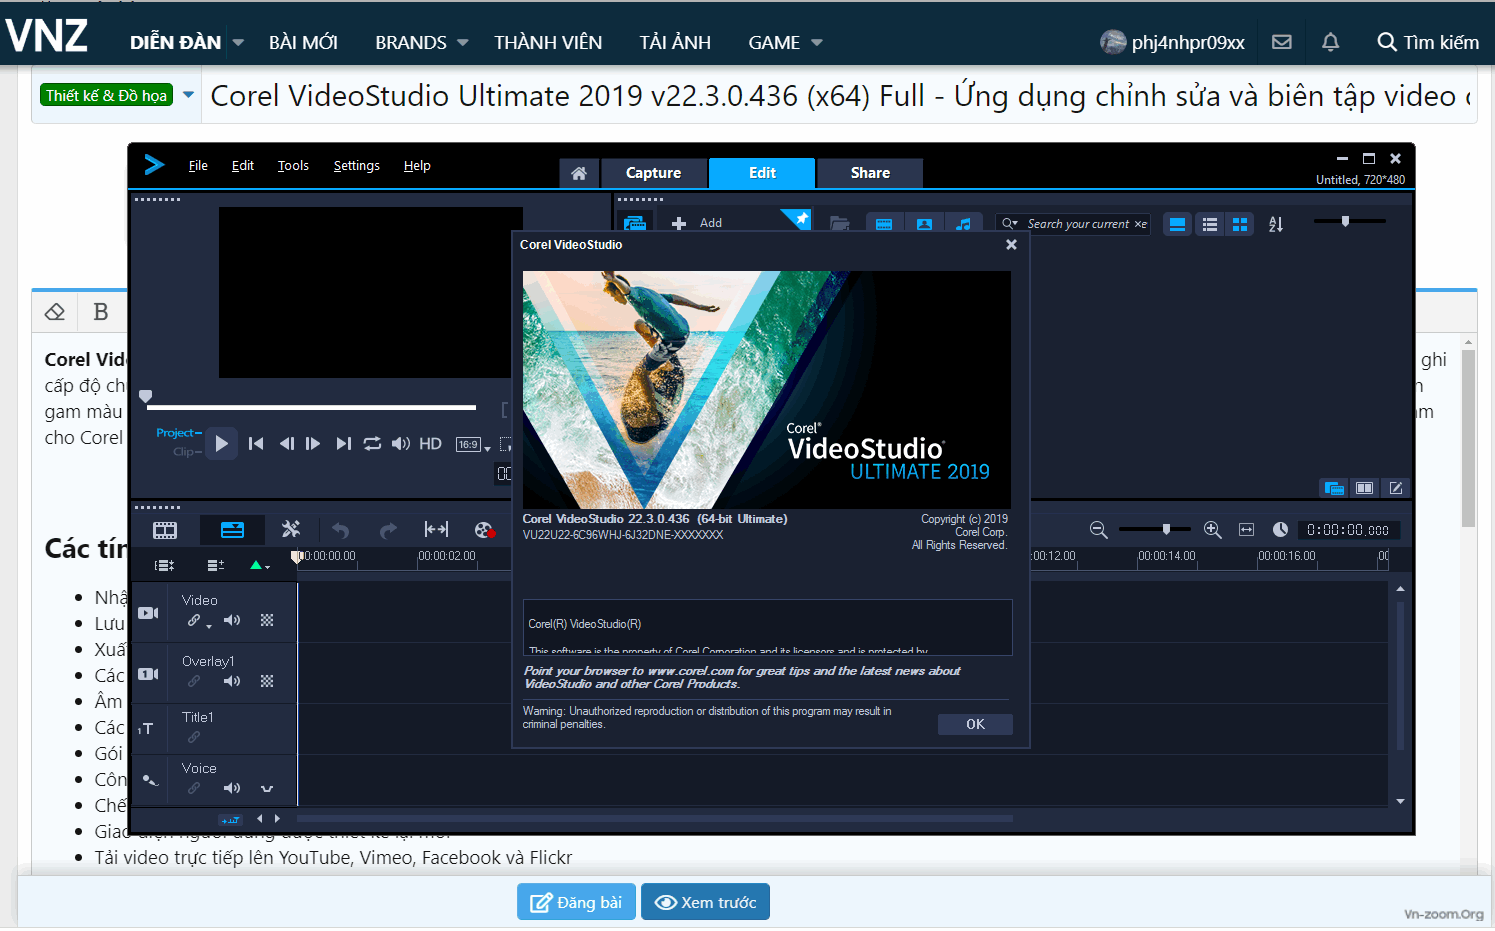 Corel VideoStudio Ultimate 2019 v22.3.0.439 (x64) Full - Ứng dụng chỉnh sửa và biên tập video cao cấp 2d604e1cf8e8df4c9